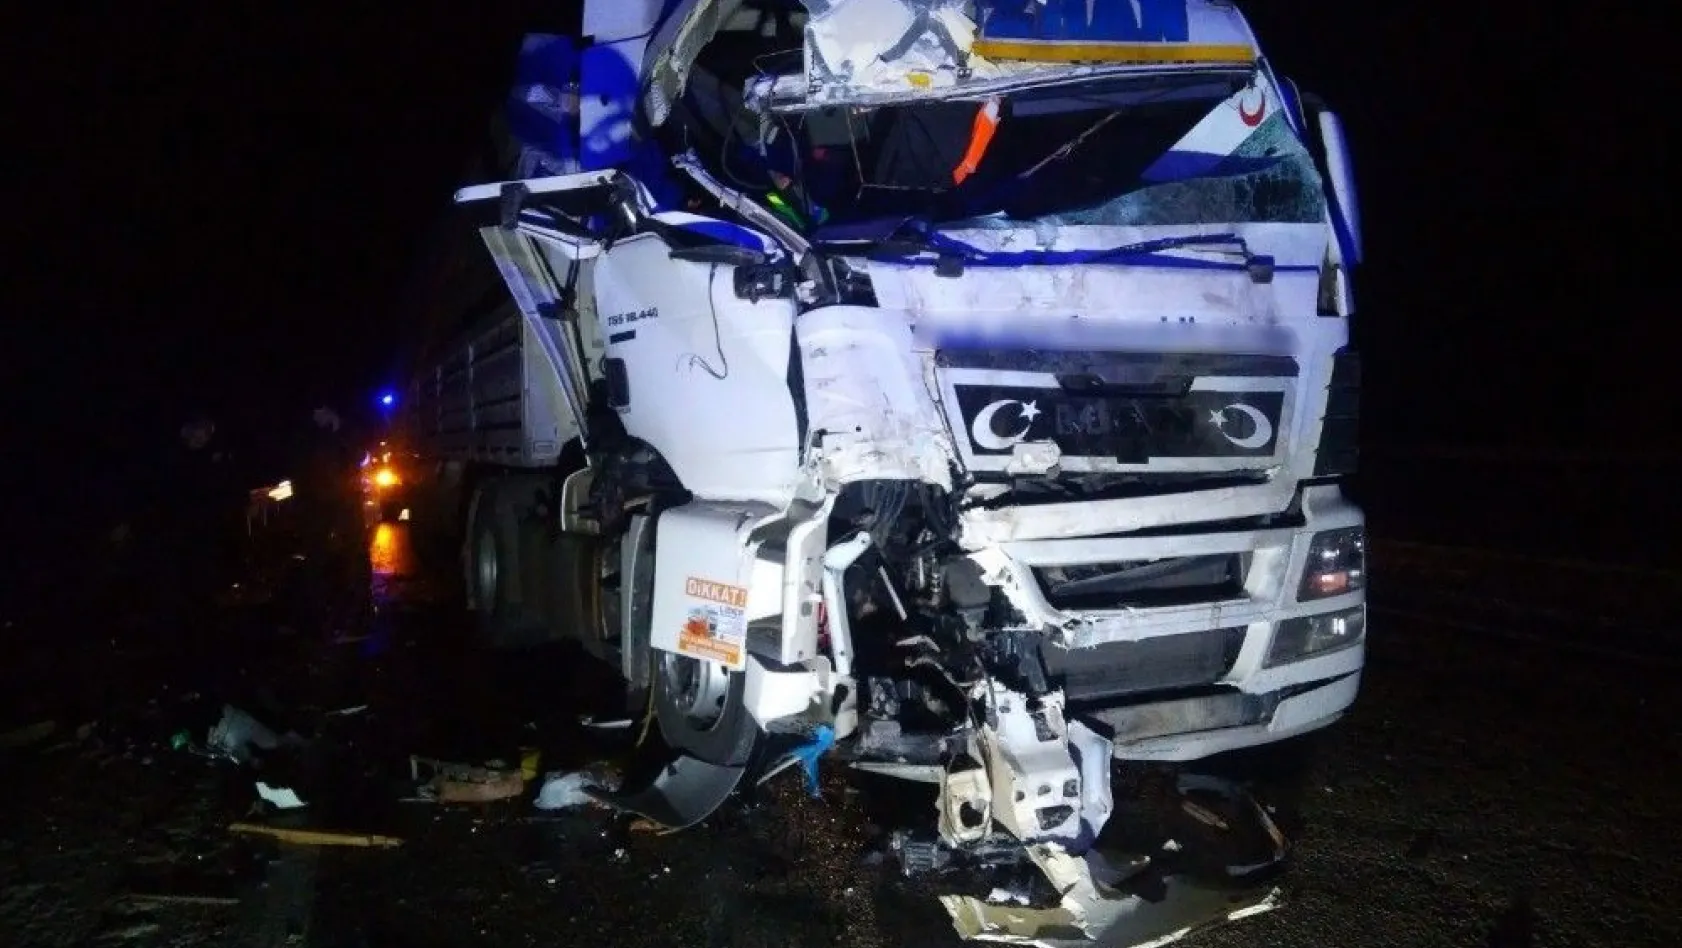 Malatya'da trafik kazası: 2 yaralı